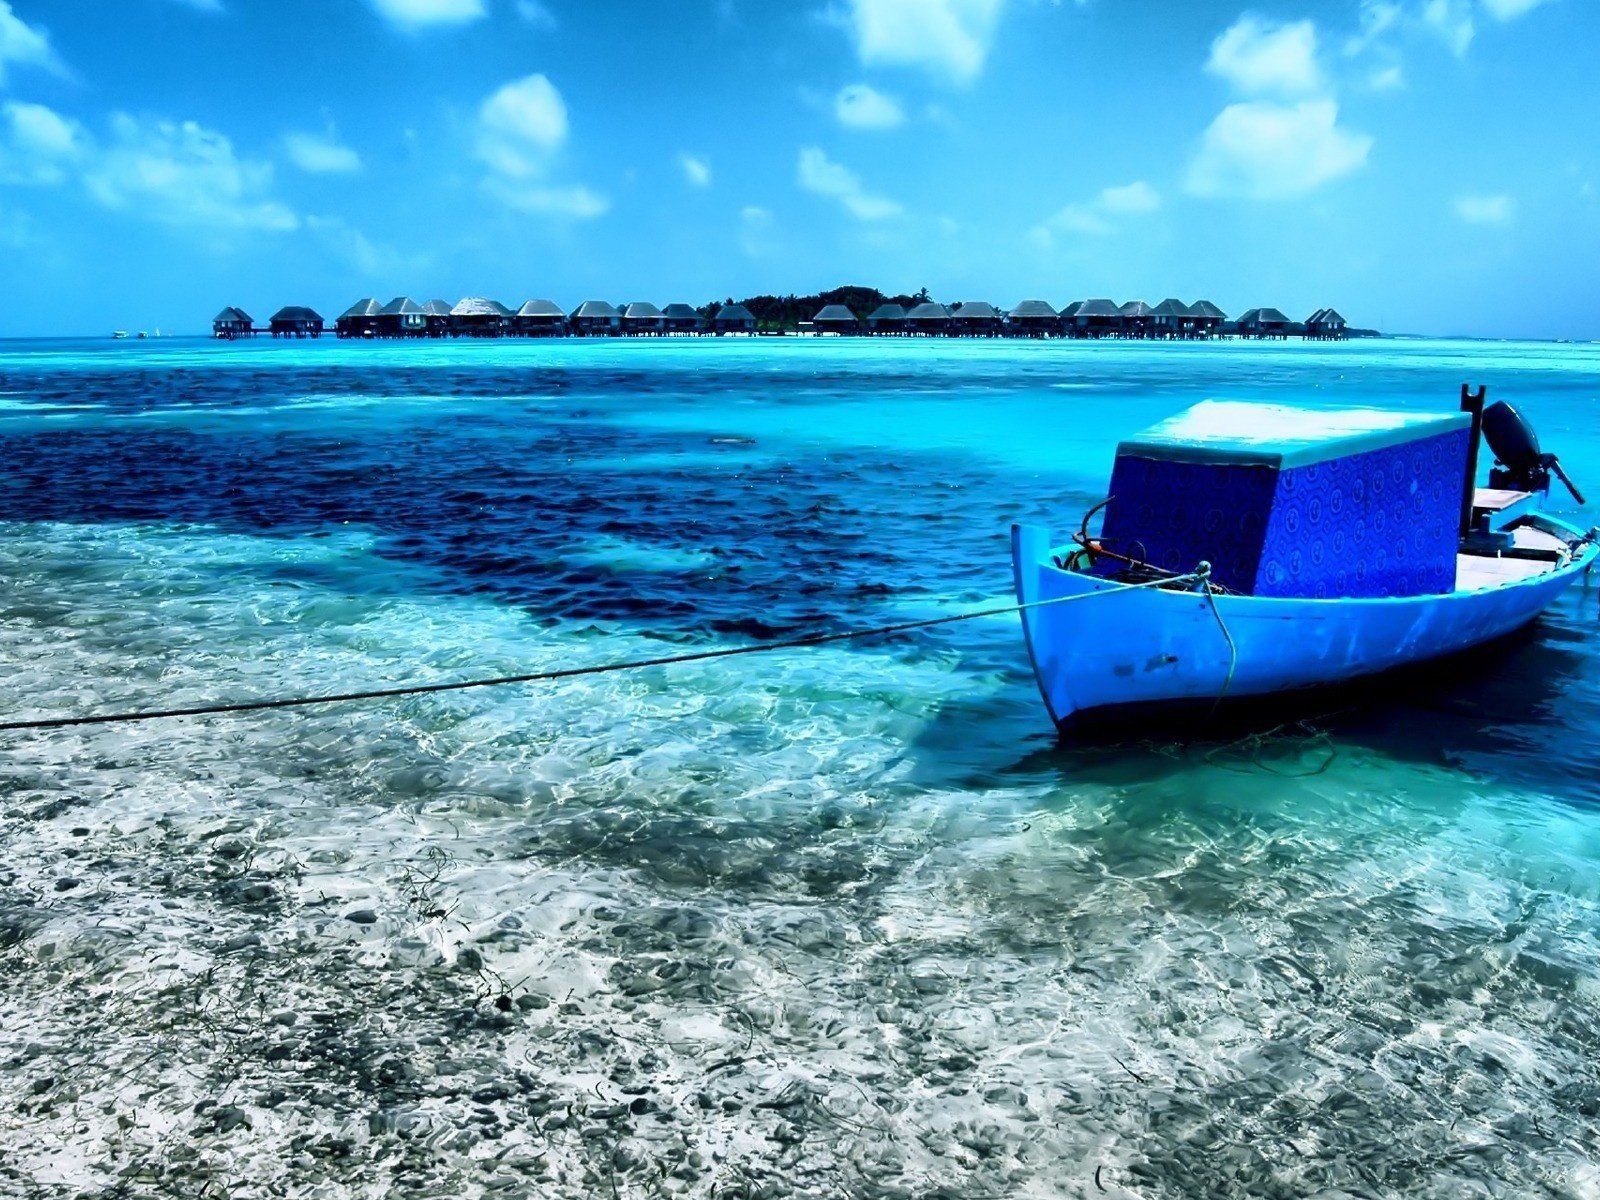 Boat island. Остров Блю Уотер. Лодка на острове. Голубая лодка. Синяя лодка.